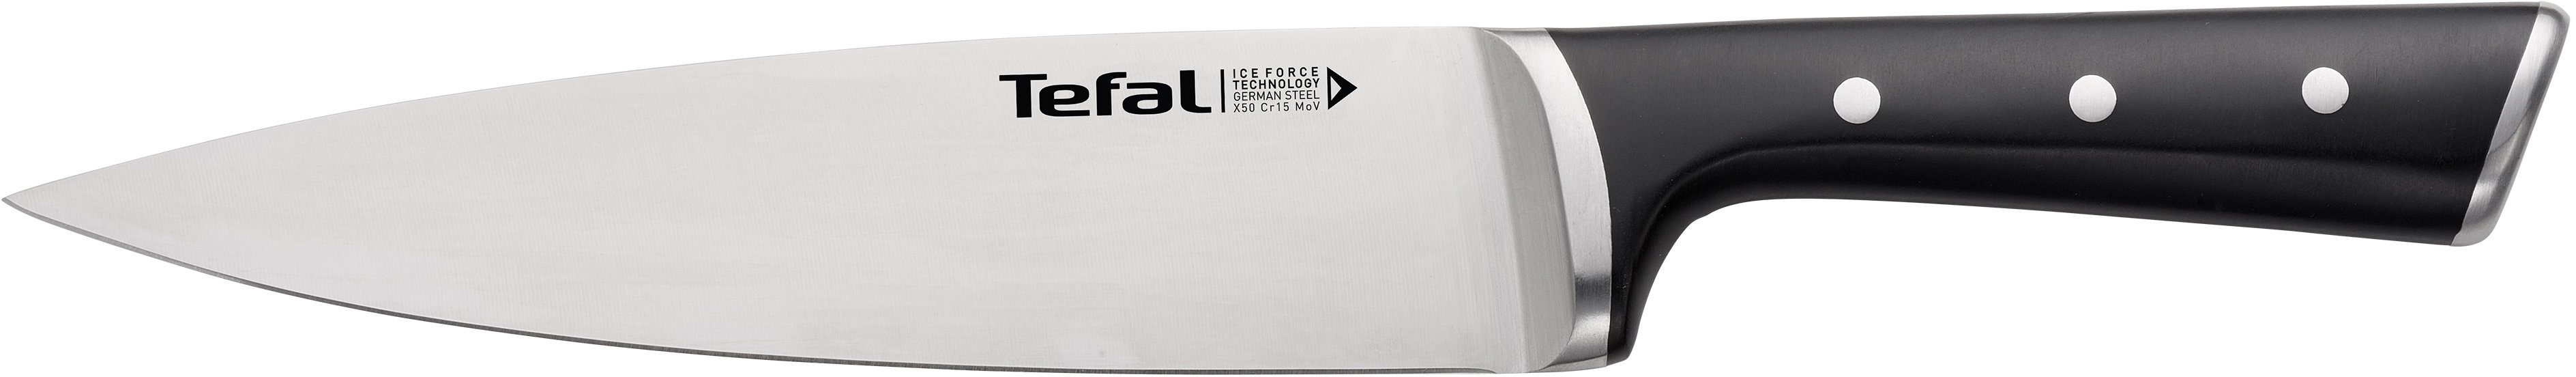 Tefal Kochmesser Edelstahl, Force, Leistungsstärke, Handschutz, dauerhafte Schwarz Ice Eishärtung